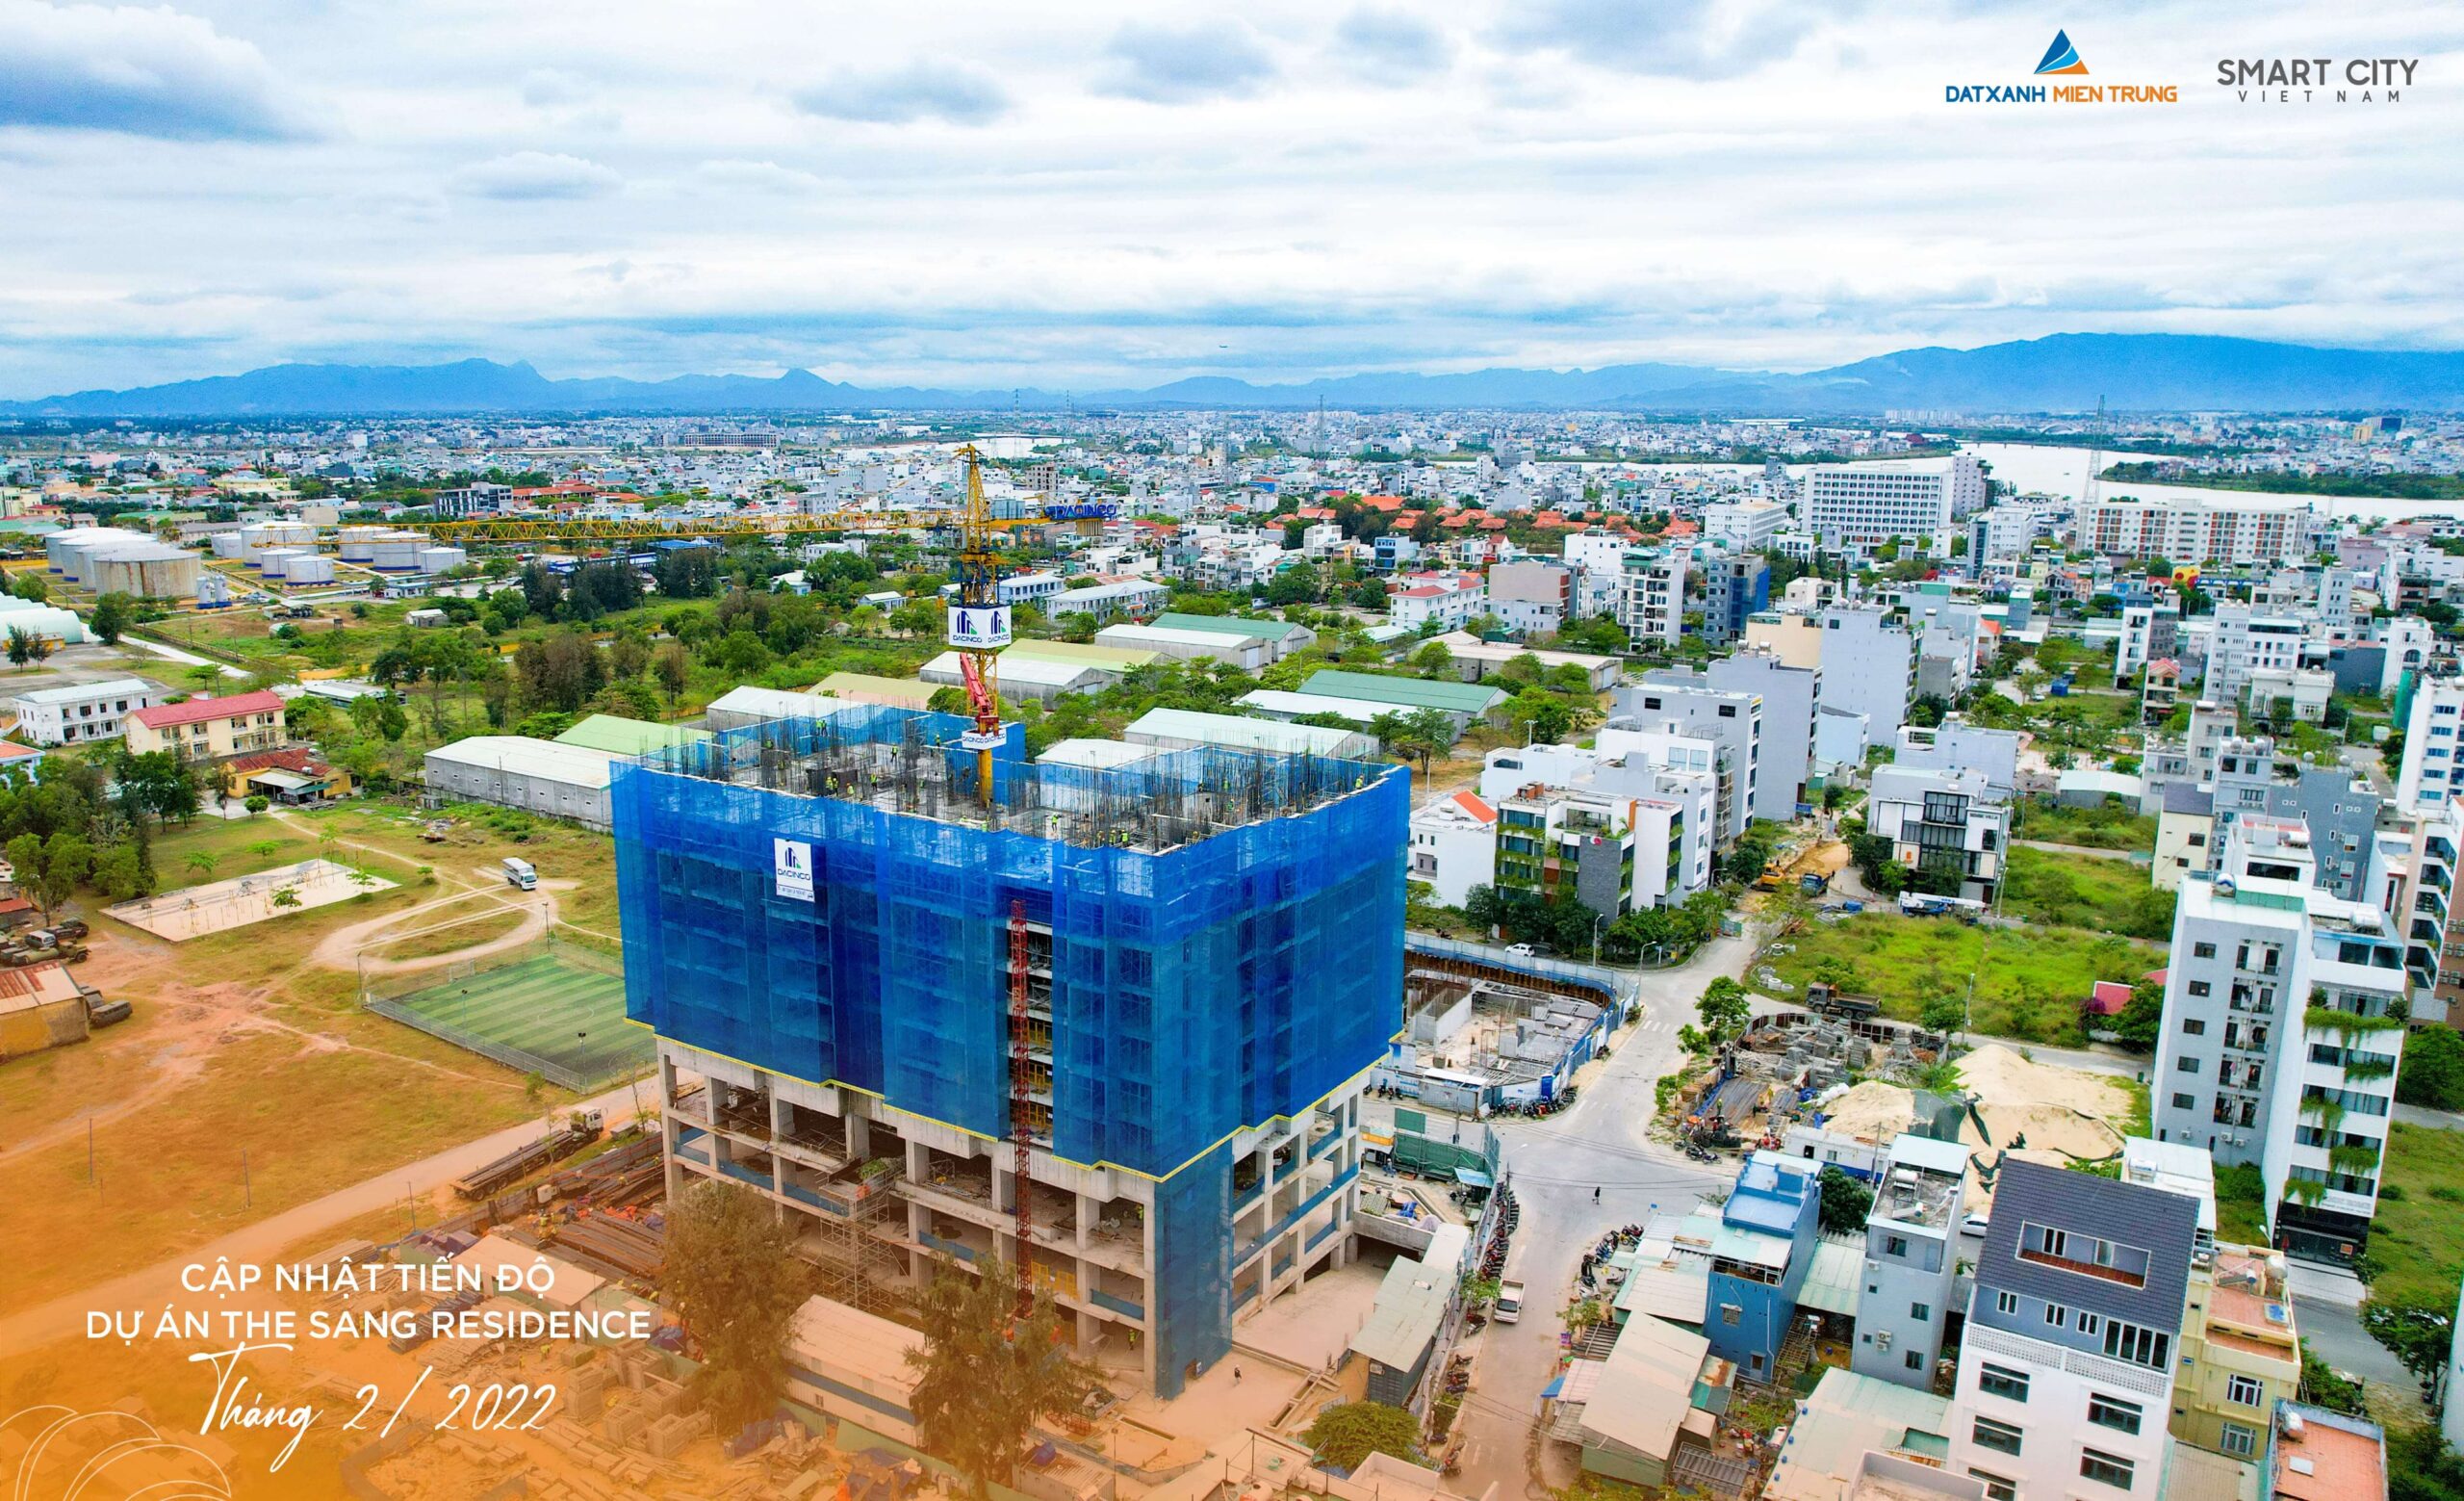 Cập nhật tiến độ thi công dự án The Sang Residence tháng 02.2022 - Viet Nam Smart City